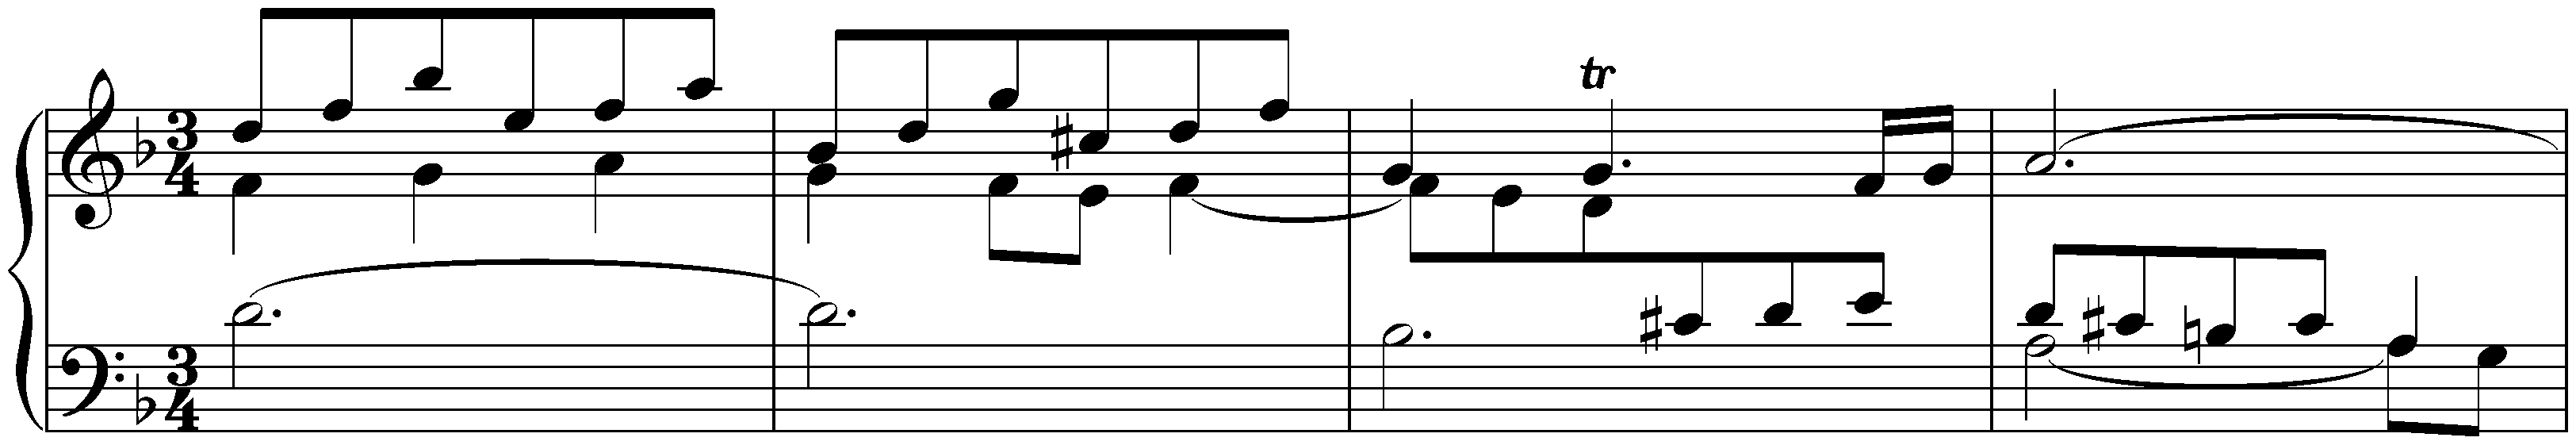 French Suite no. 1 in D minor, BWV 812; 4. Menuet I – Menuet II – Menuet I